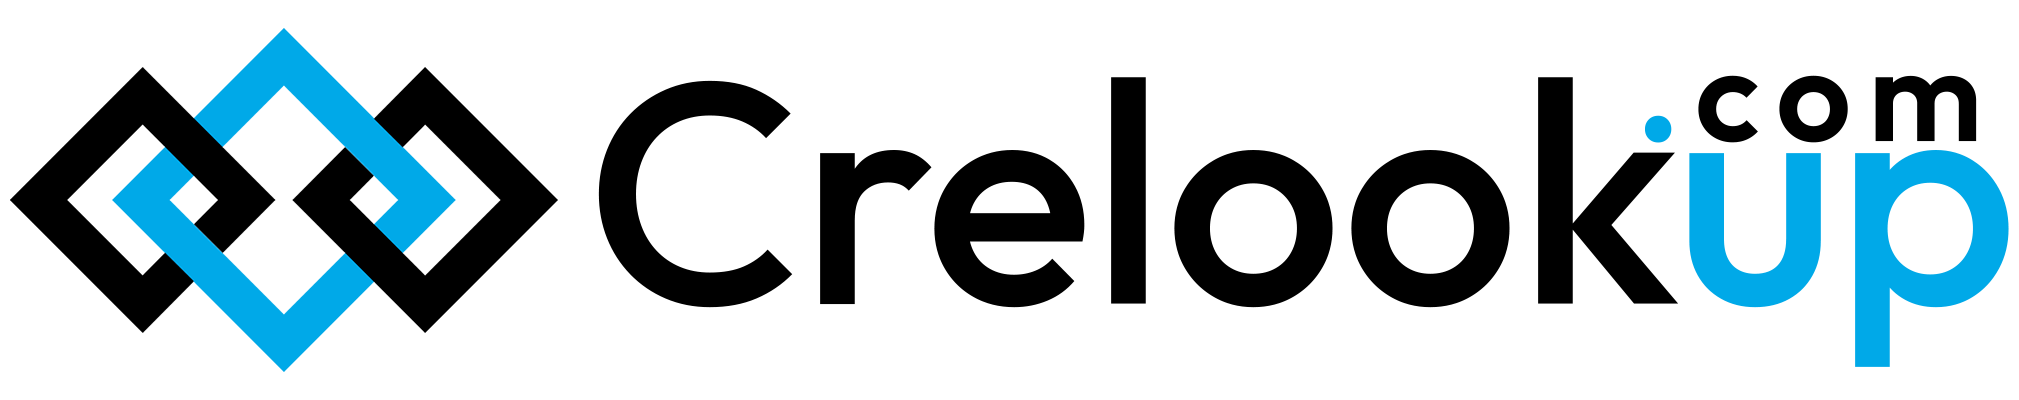 crelookup logo